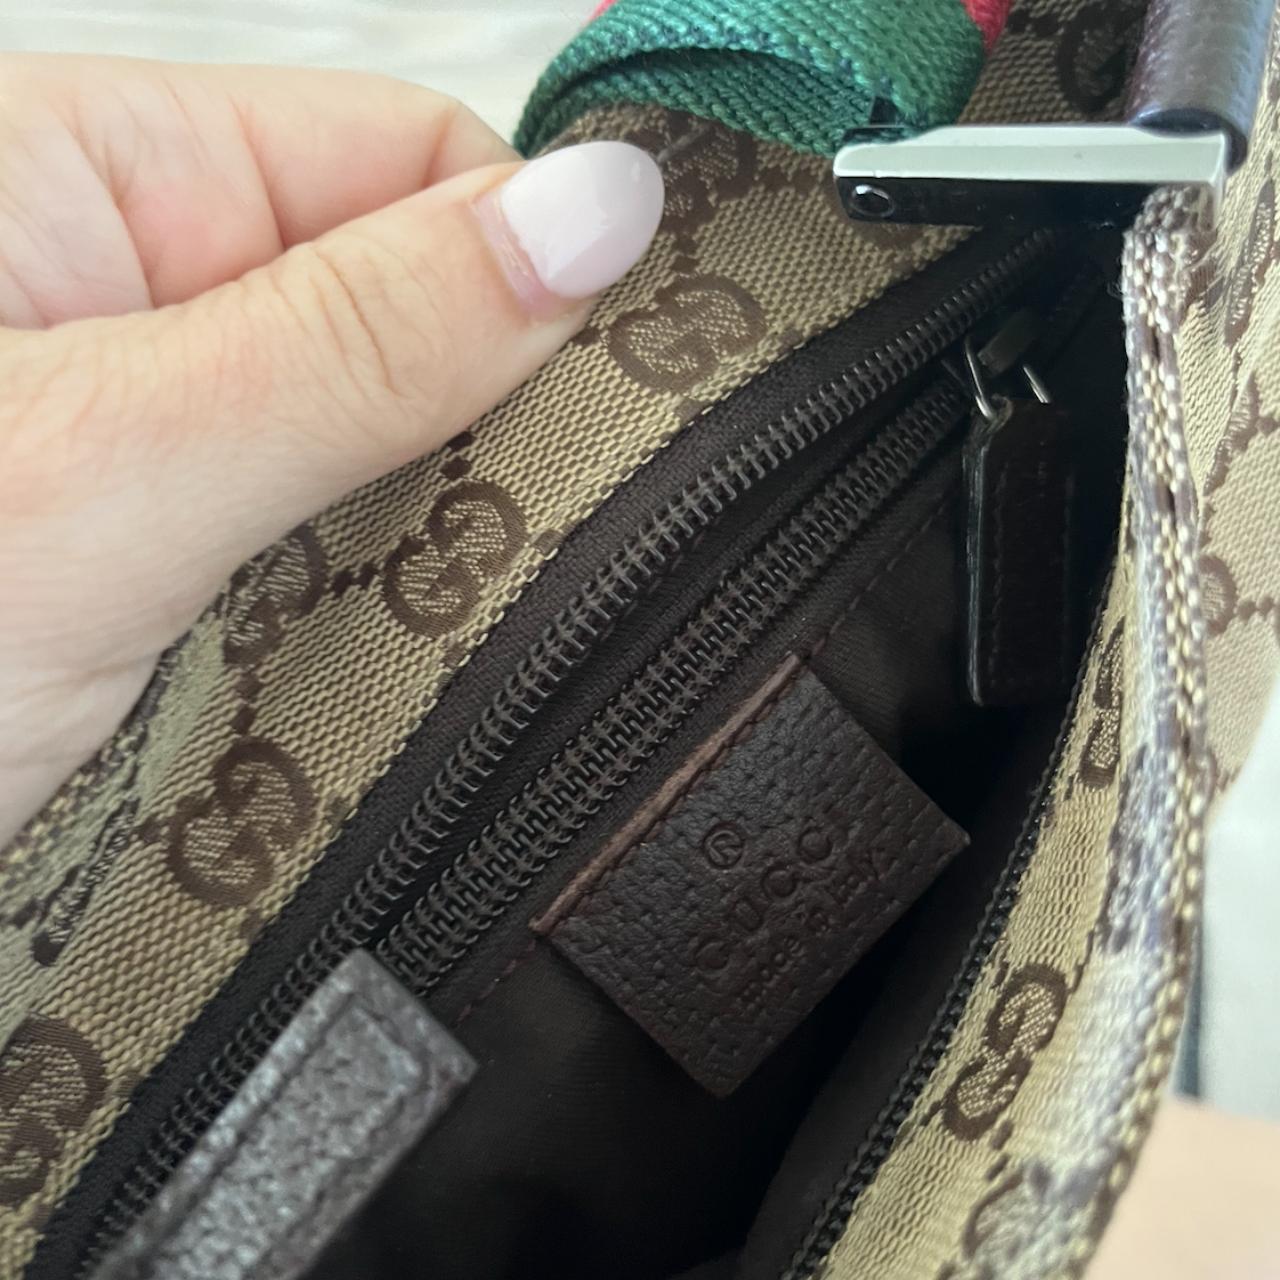 Rare find VINTAGE Gucci cross body shoulder bag - Depop